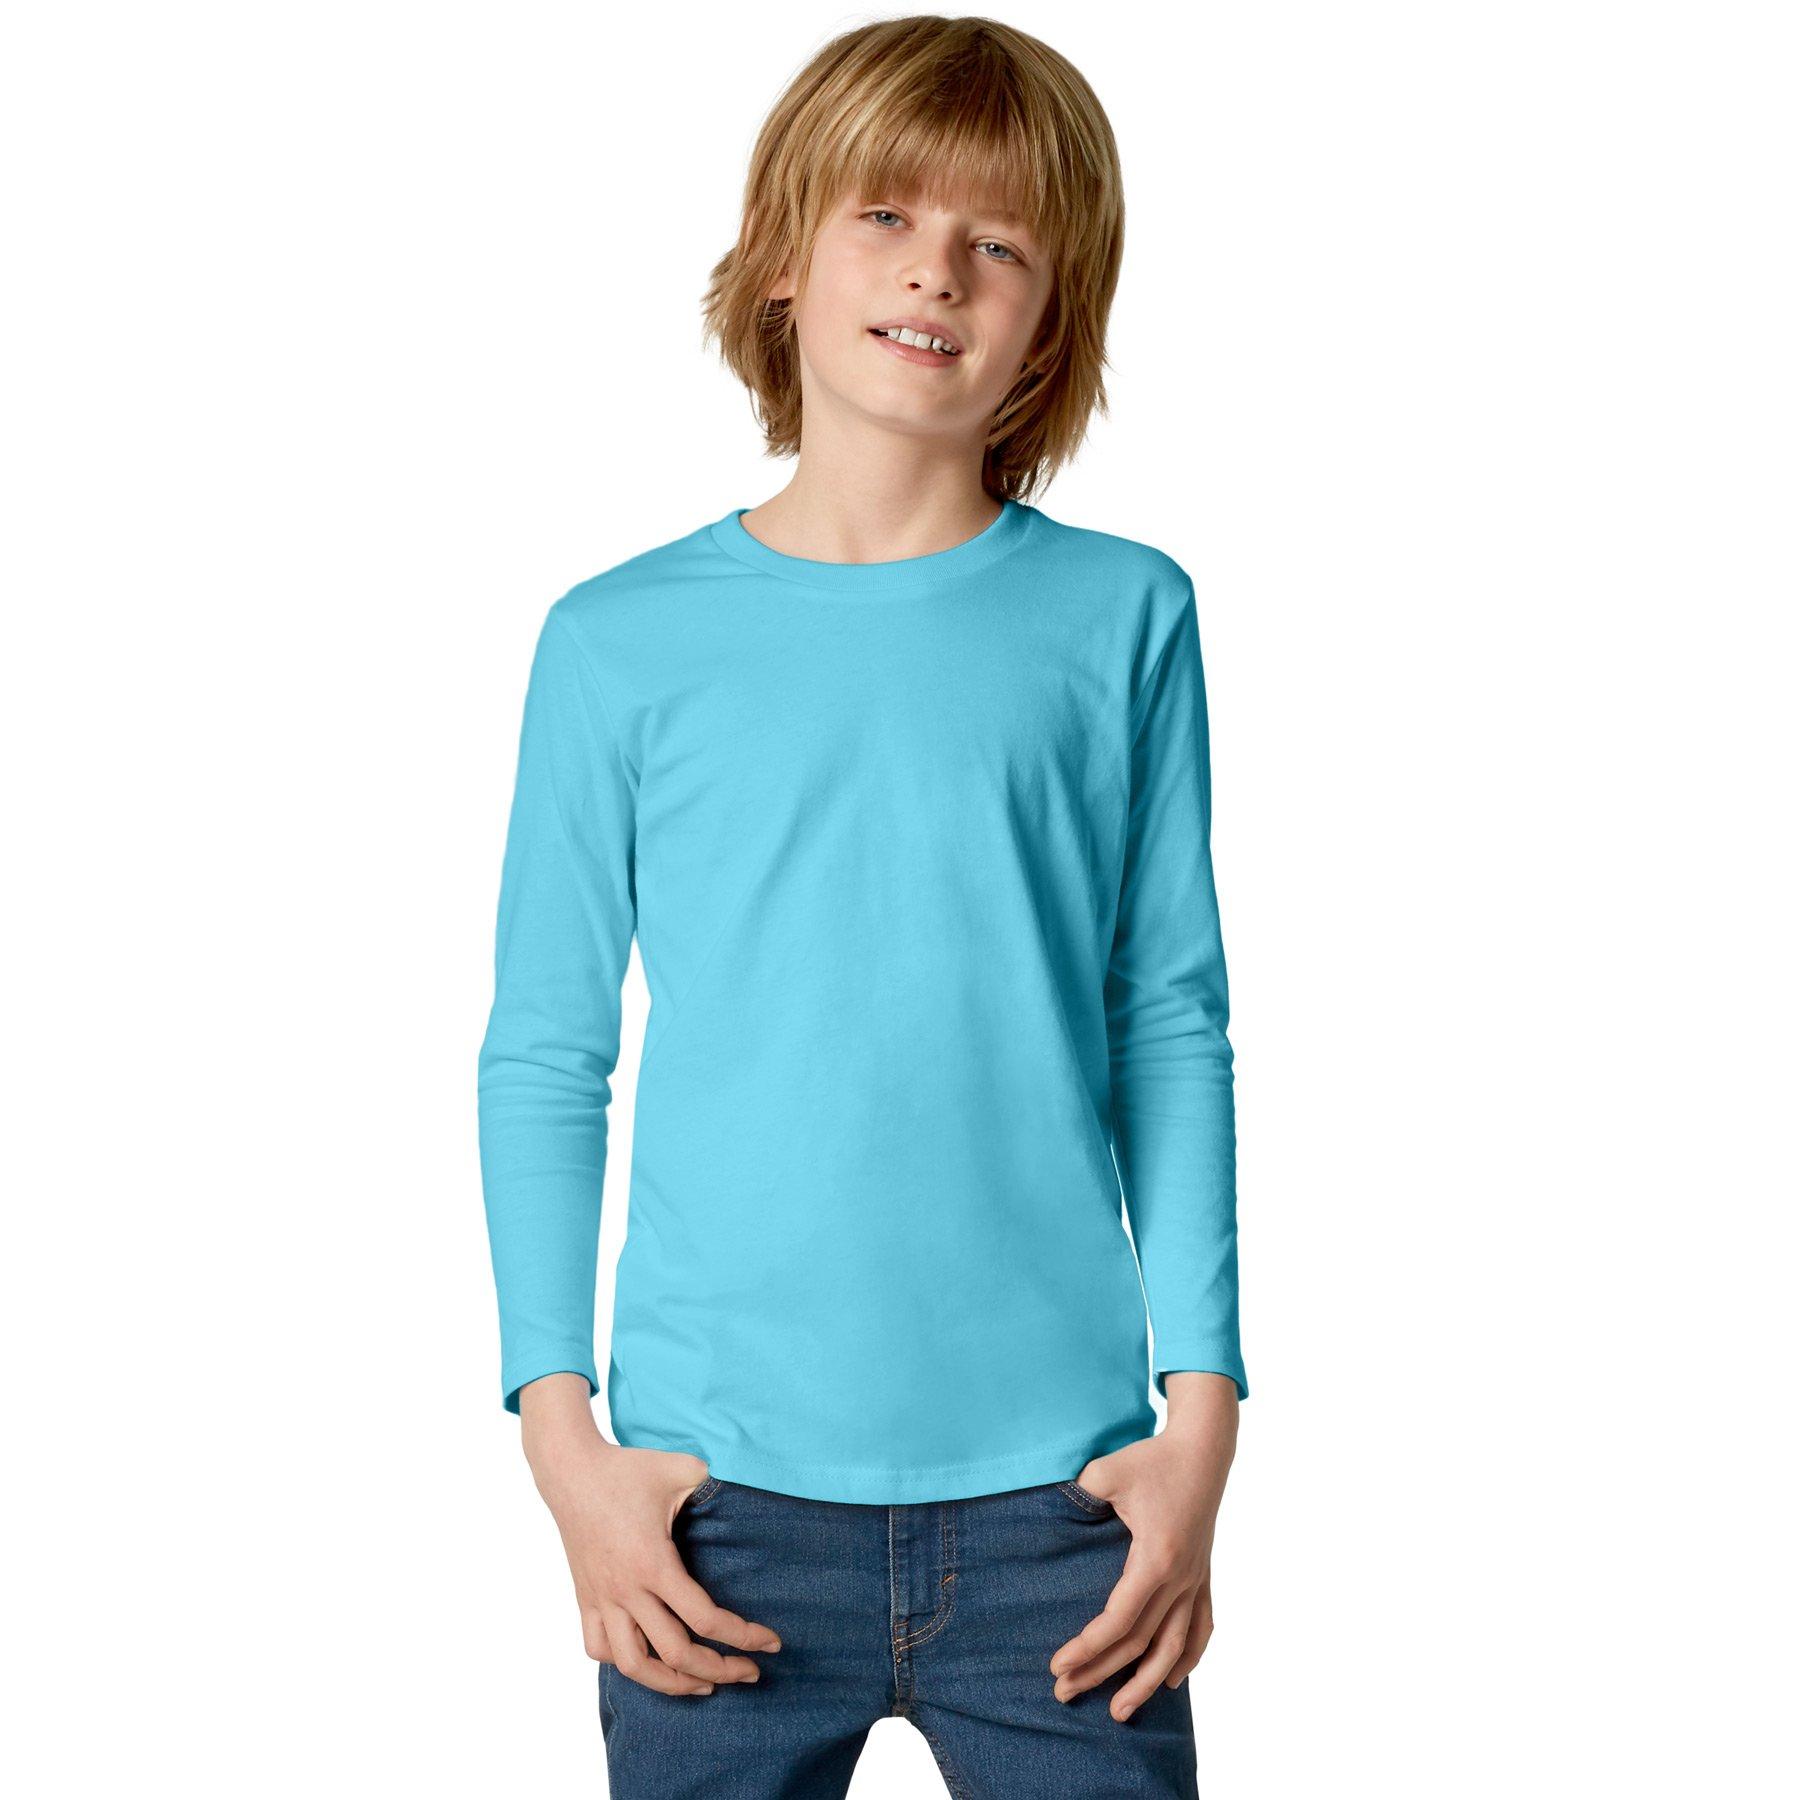 Langarm-shirt Kinder Jungen Hellblau 140 von Tectake